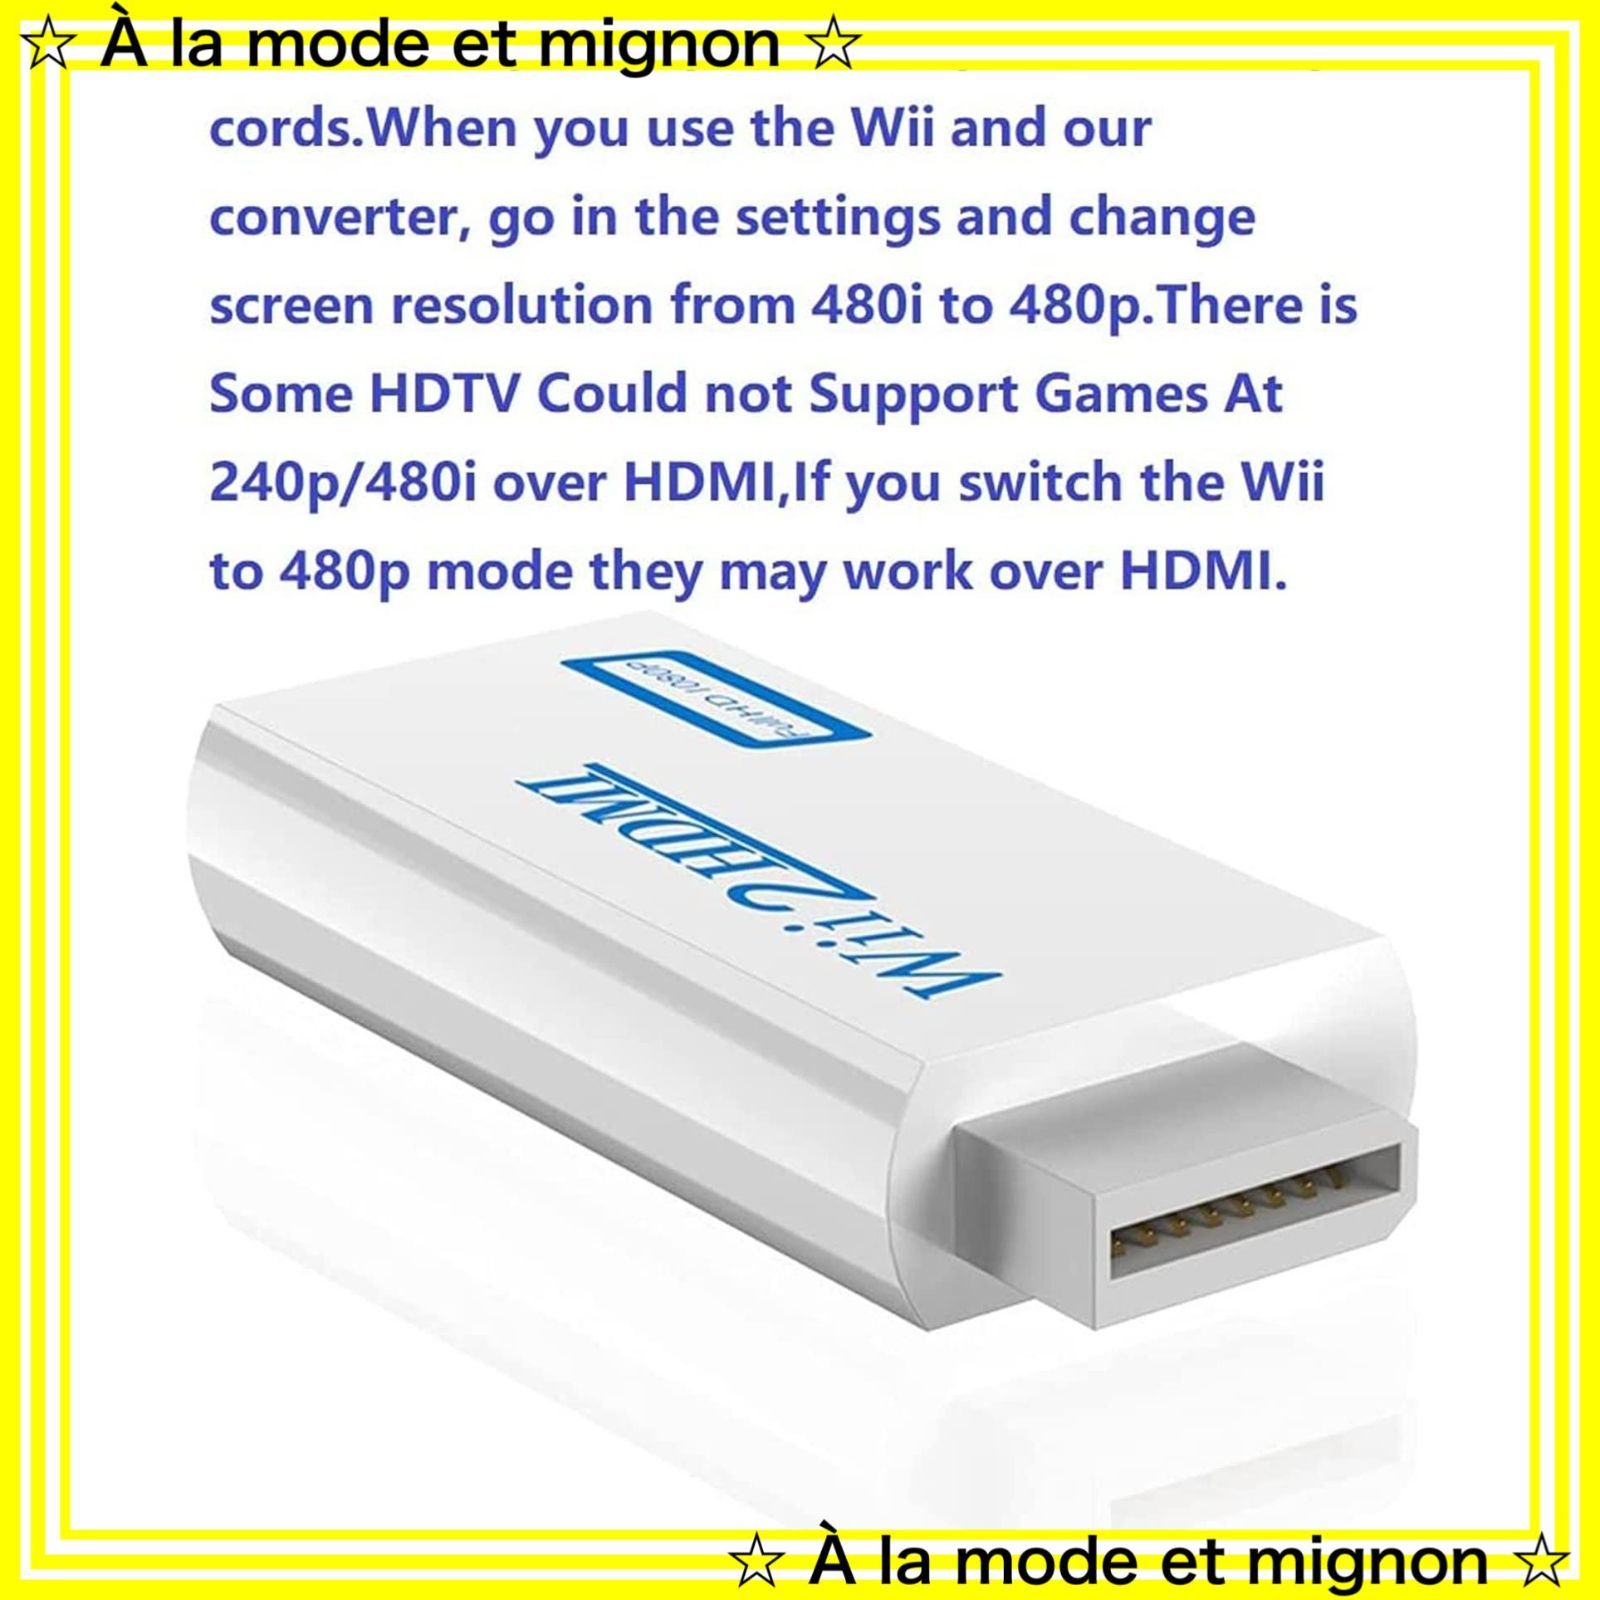 Wii to HDMI 変換アダプタ Wii to HDMI コンバーター Wii専用HDMI コンバーター アップコンバーター 3.5mmオーディオ